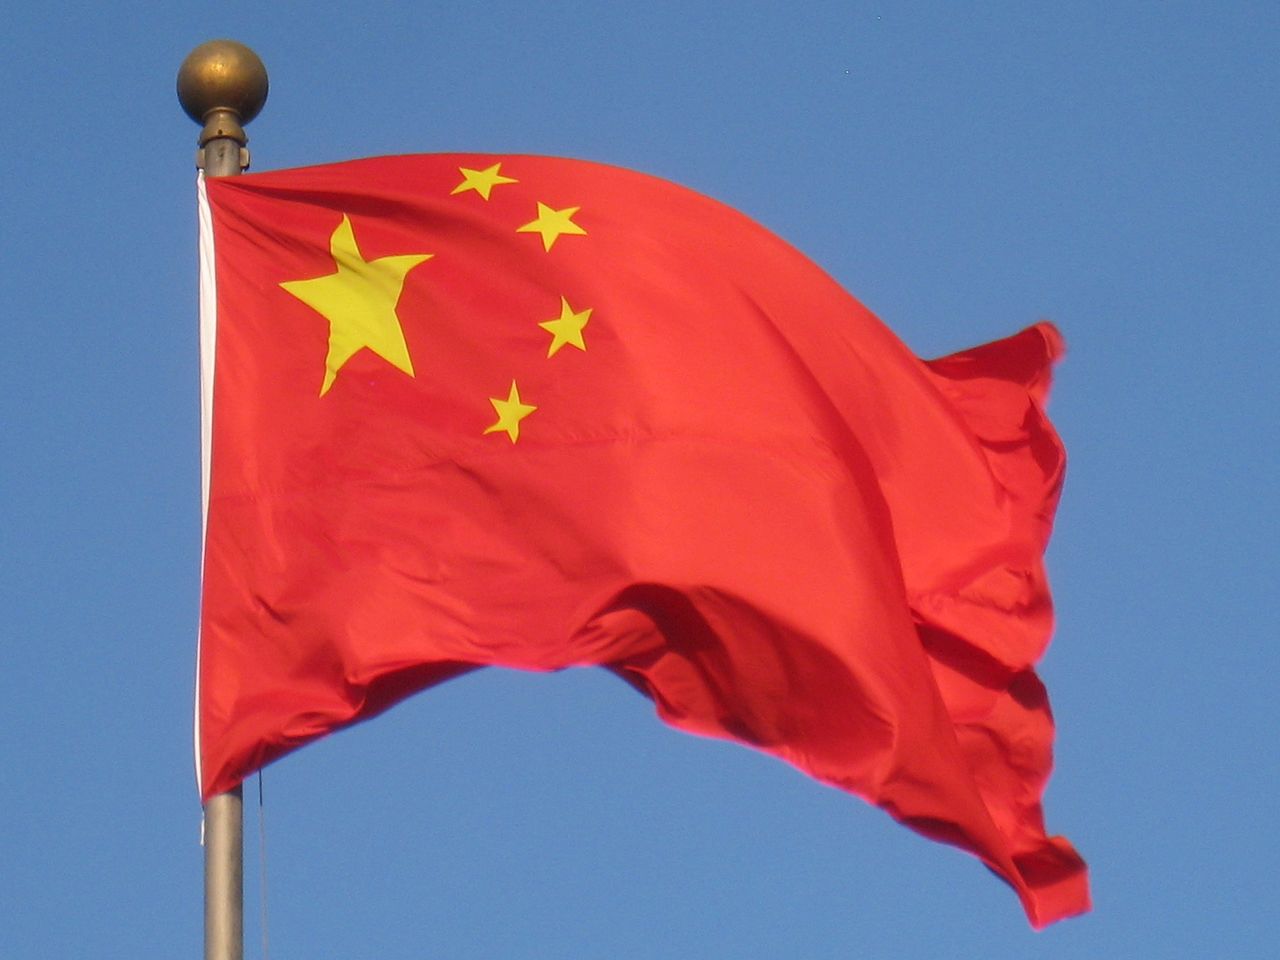 Quốc kỳ của Trung Quốc có nền đỏ và 5 ngôi sao vàng